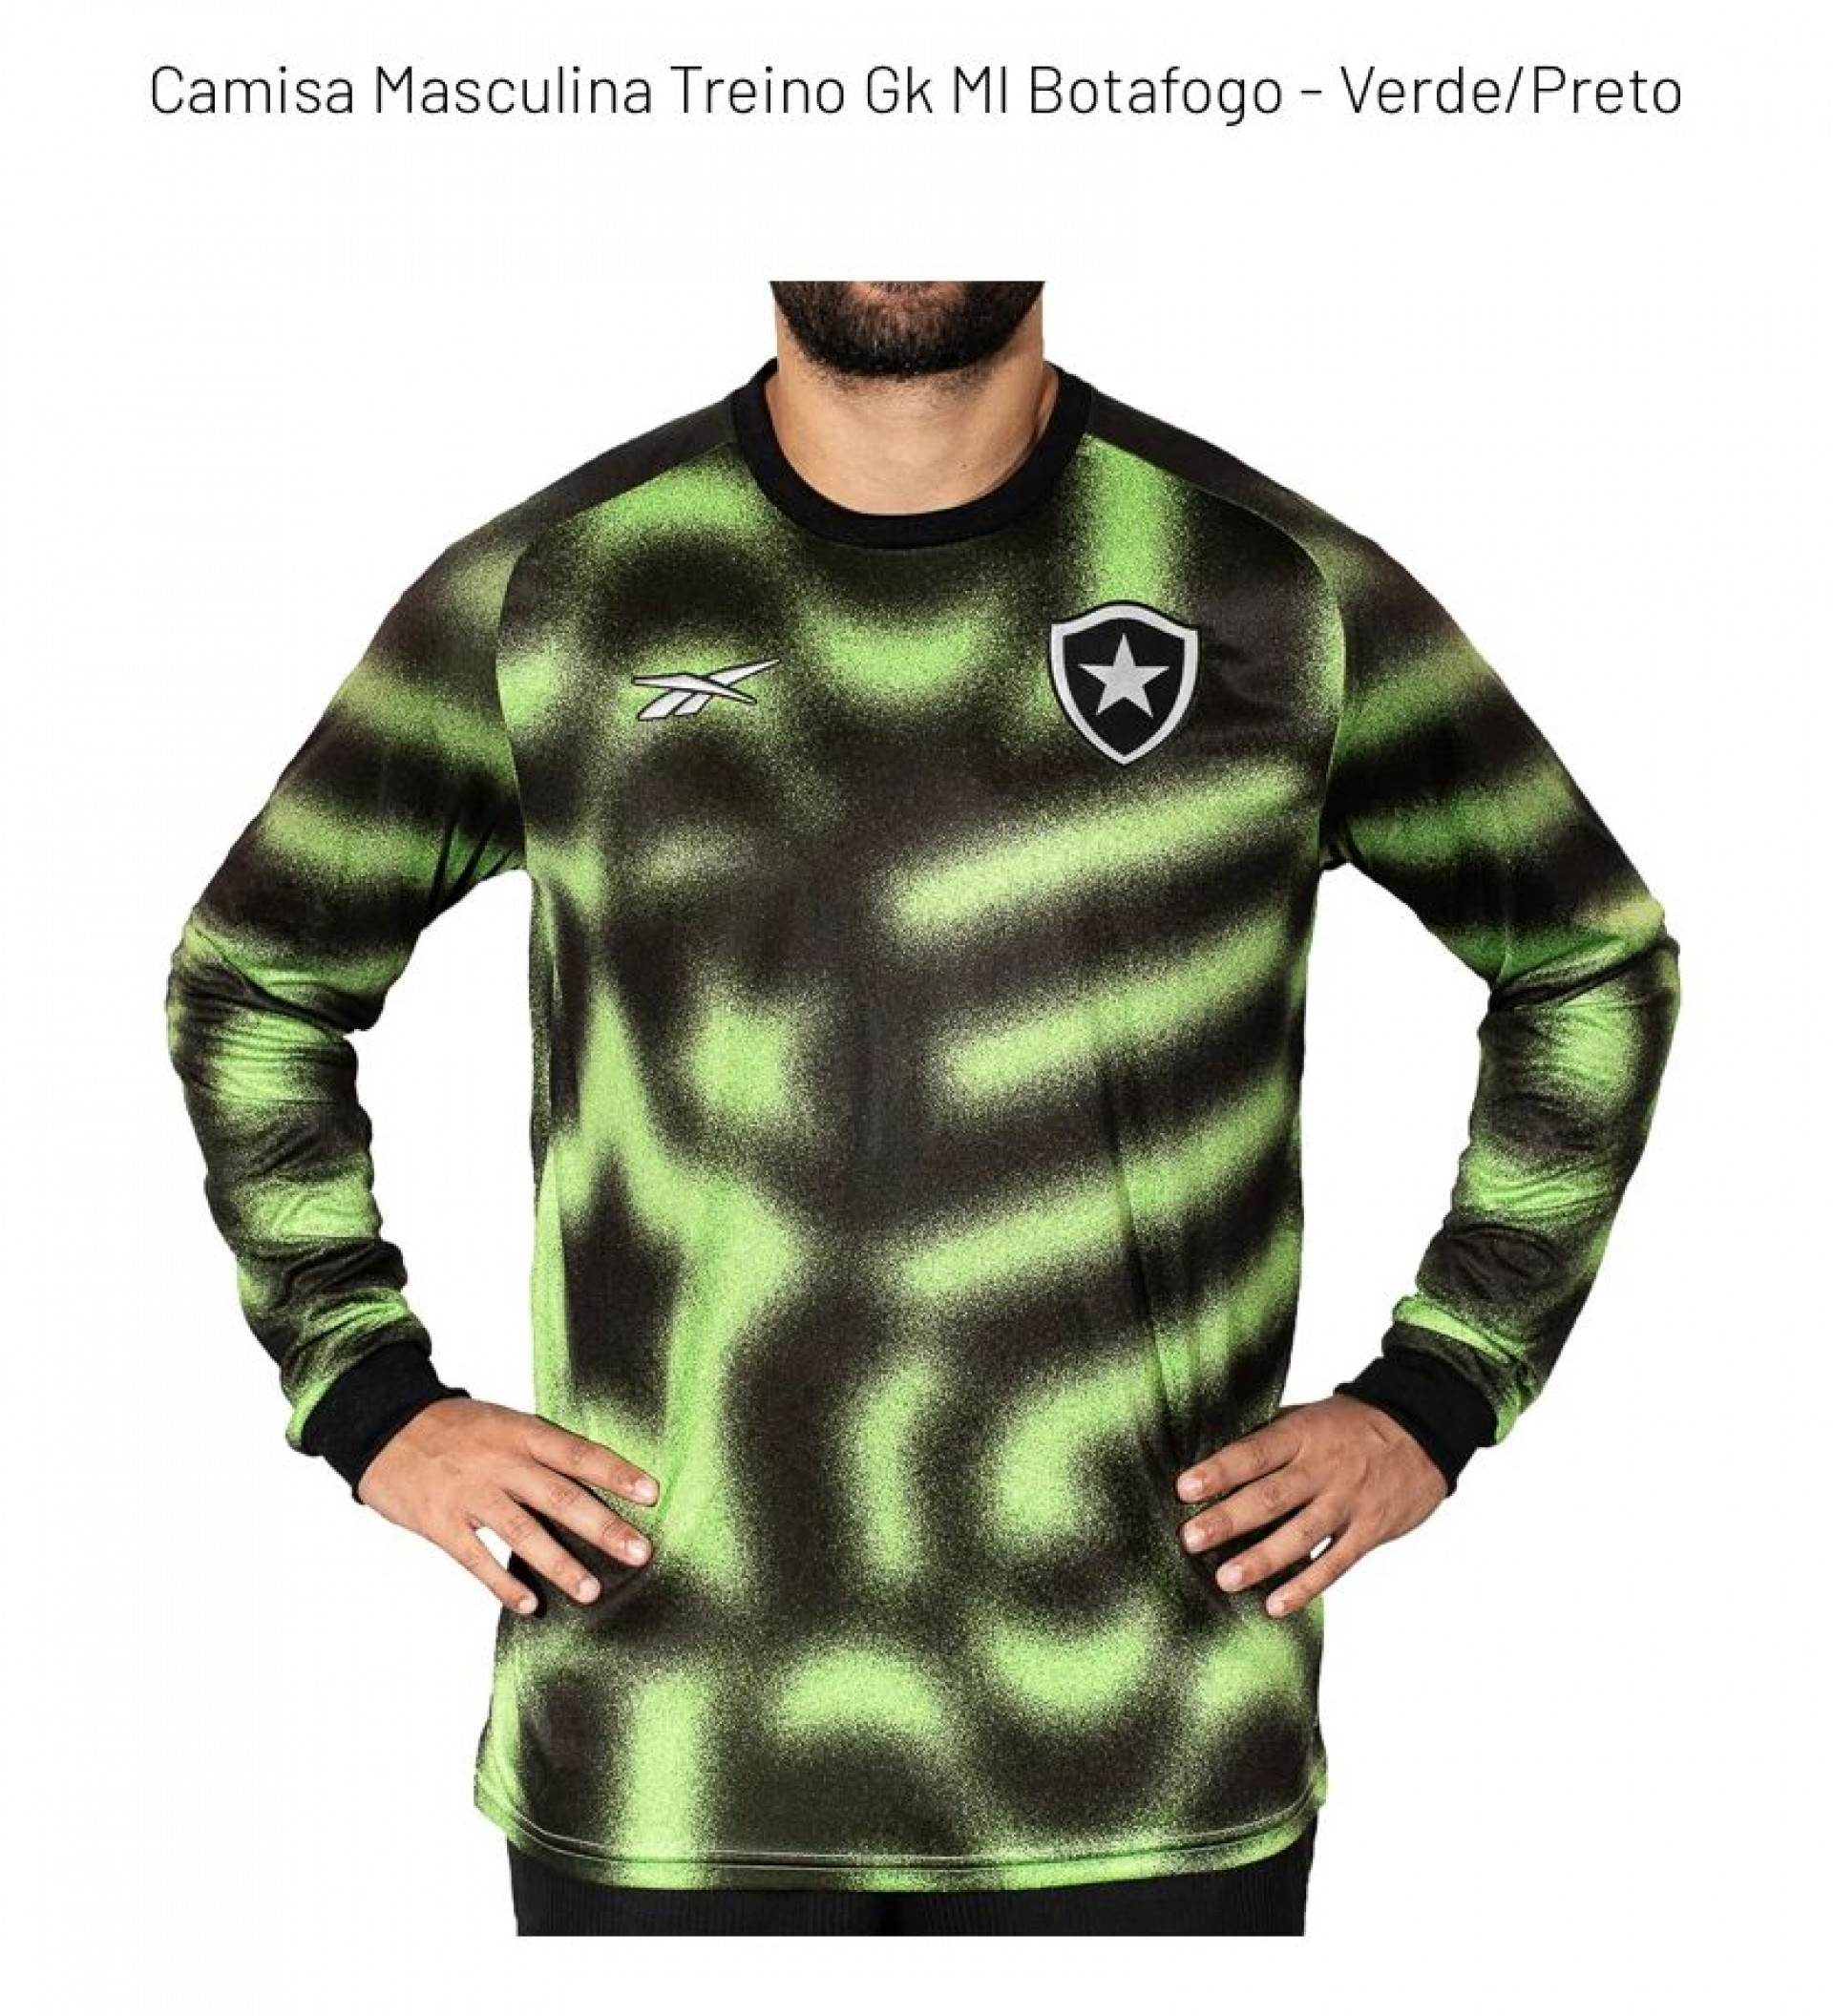 Nova camisa de aquecimento dos goleiros do Botafogo